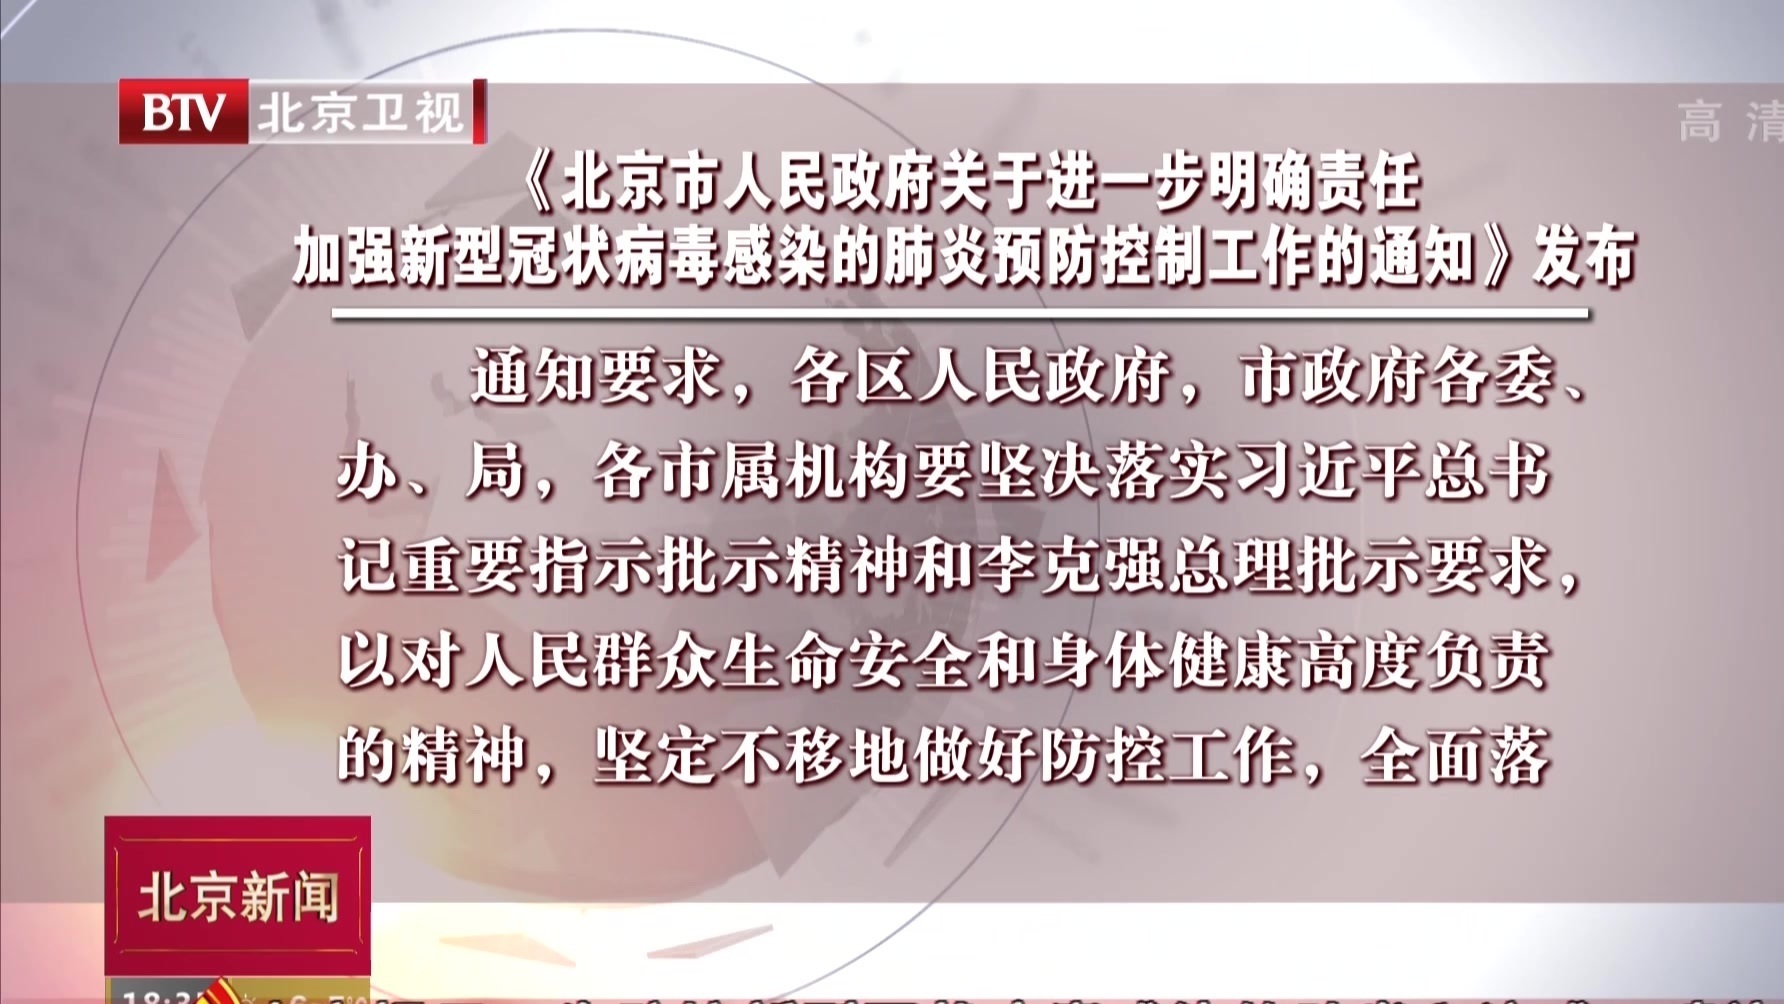 北京市政府关于加强新型冠状病毒感染肺炎防控的通知